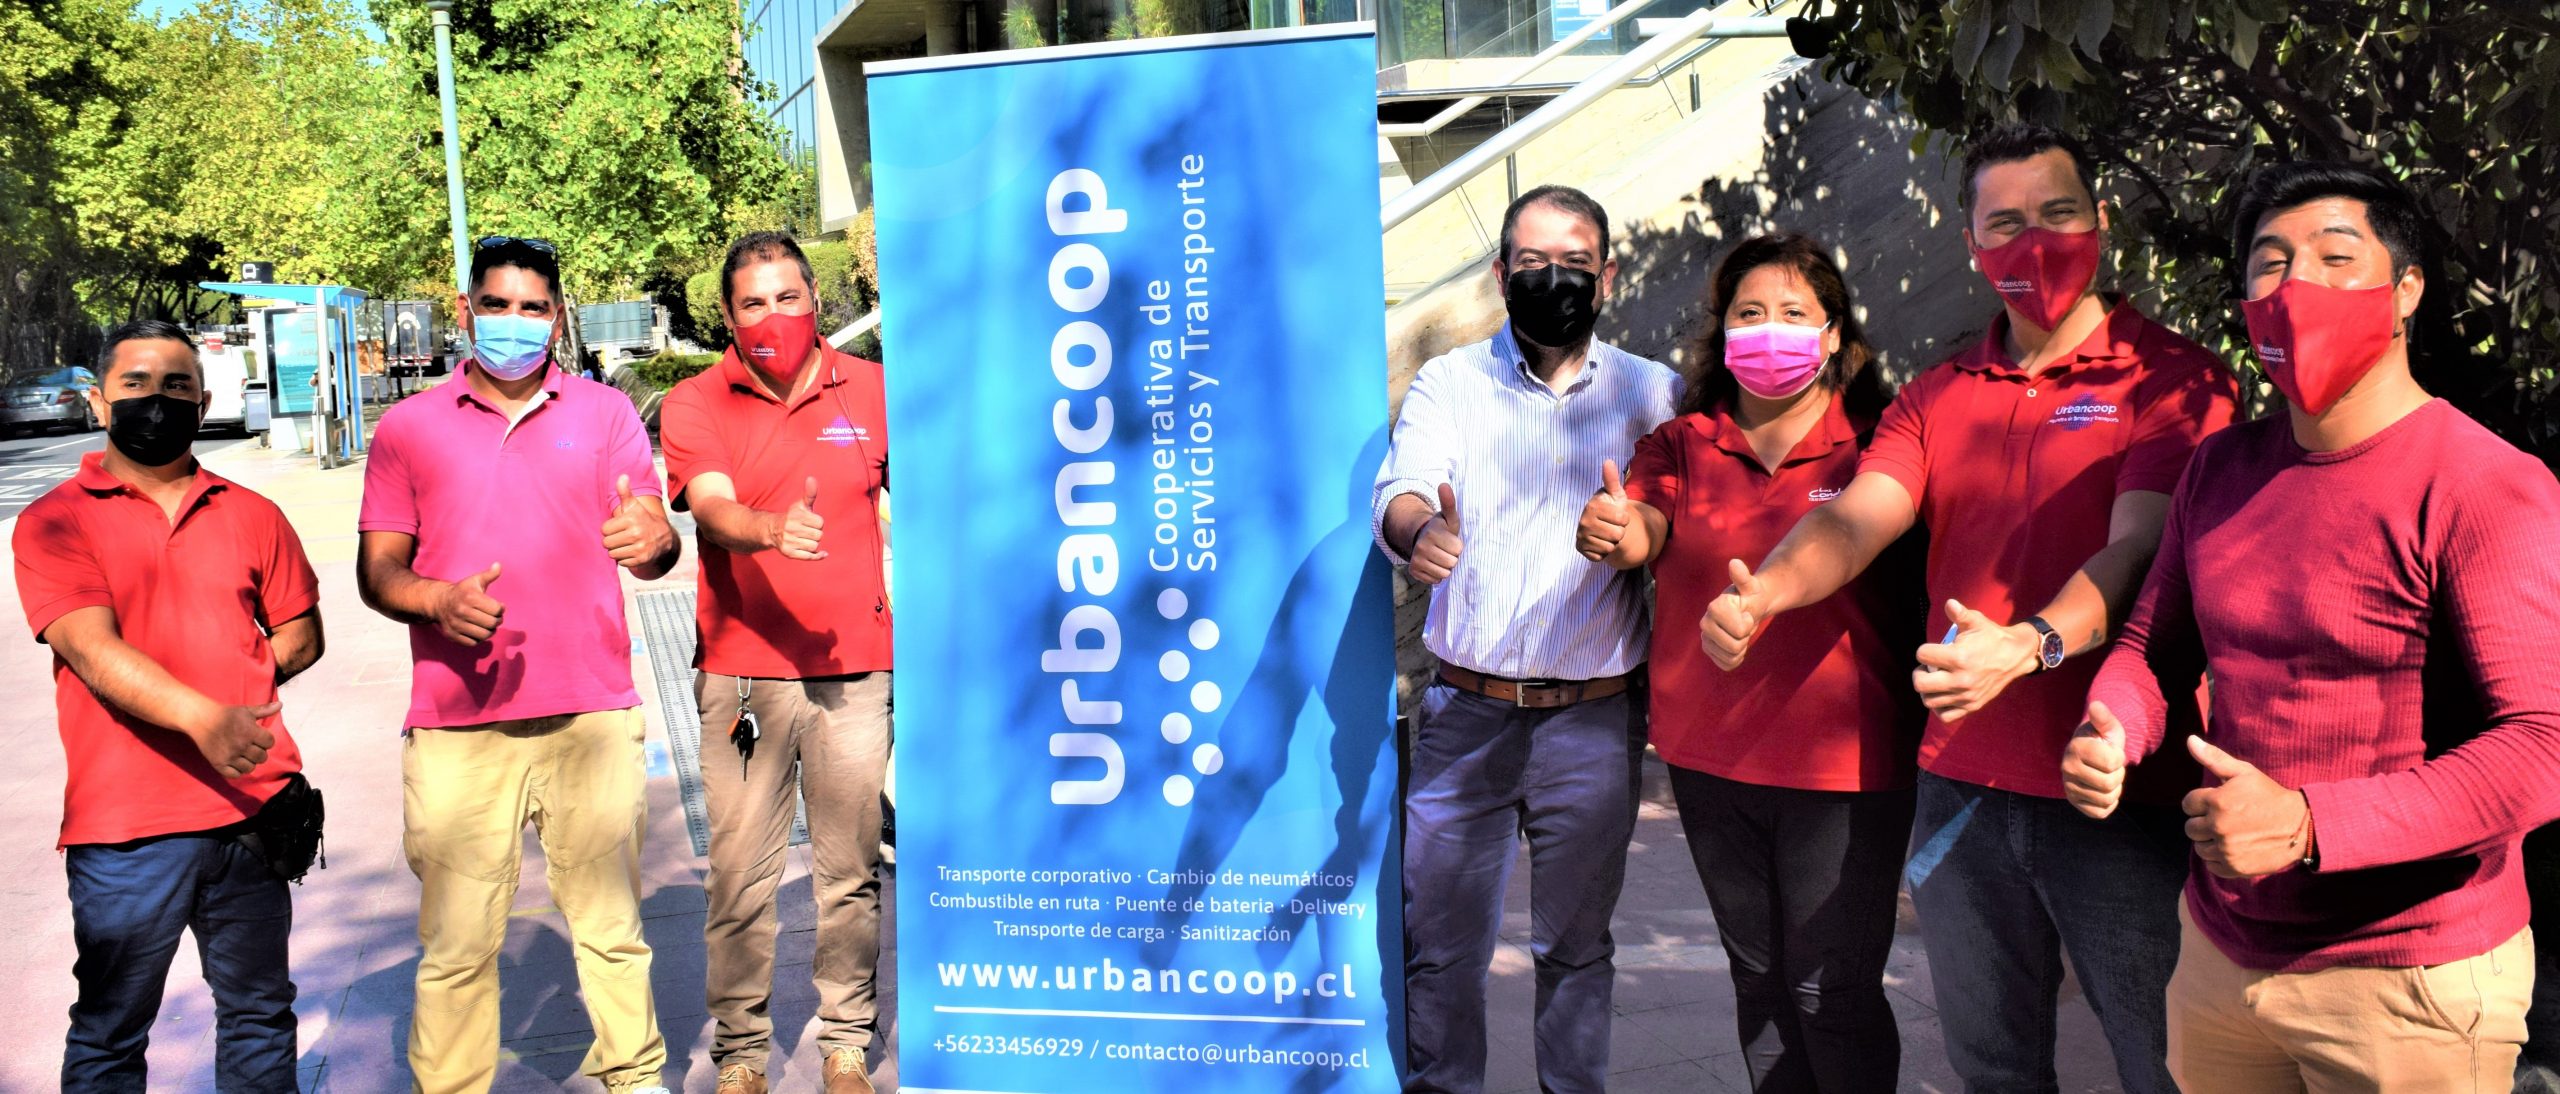 Cooperativa Urbancoop: Preparados para atender a sus pasajeros en pandemia